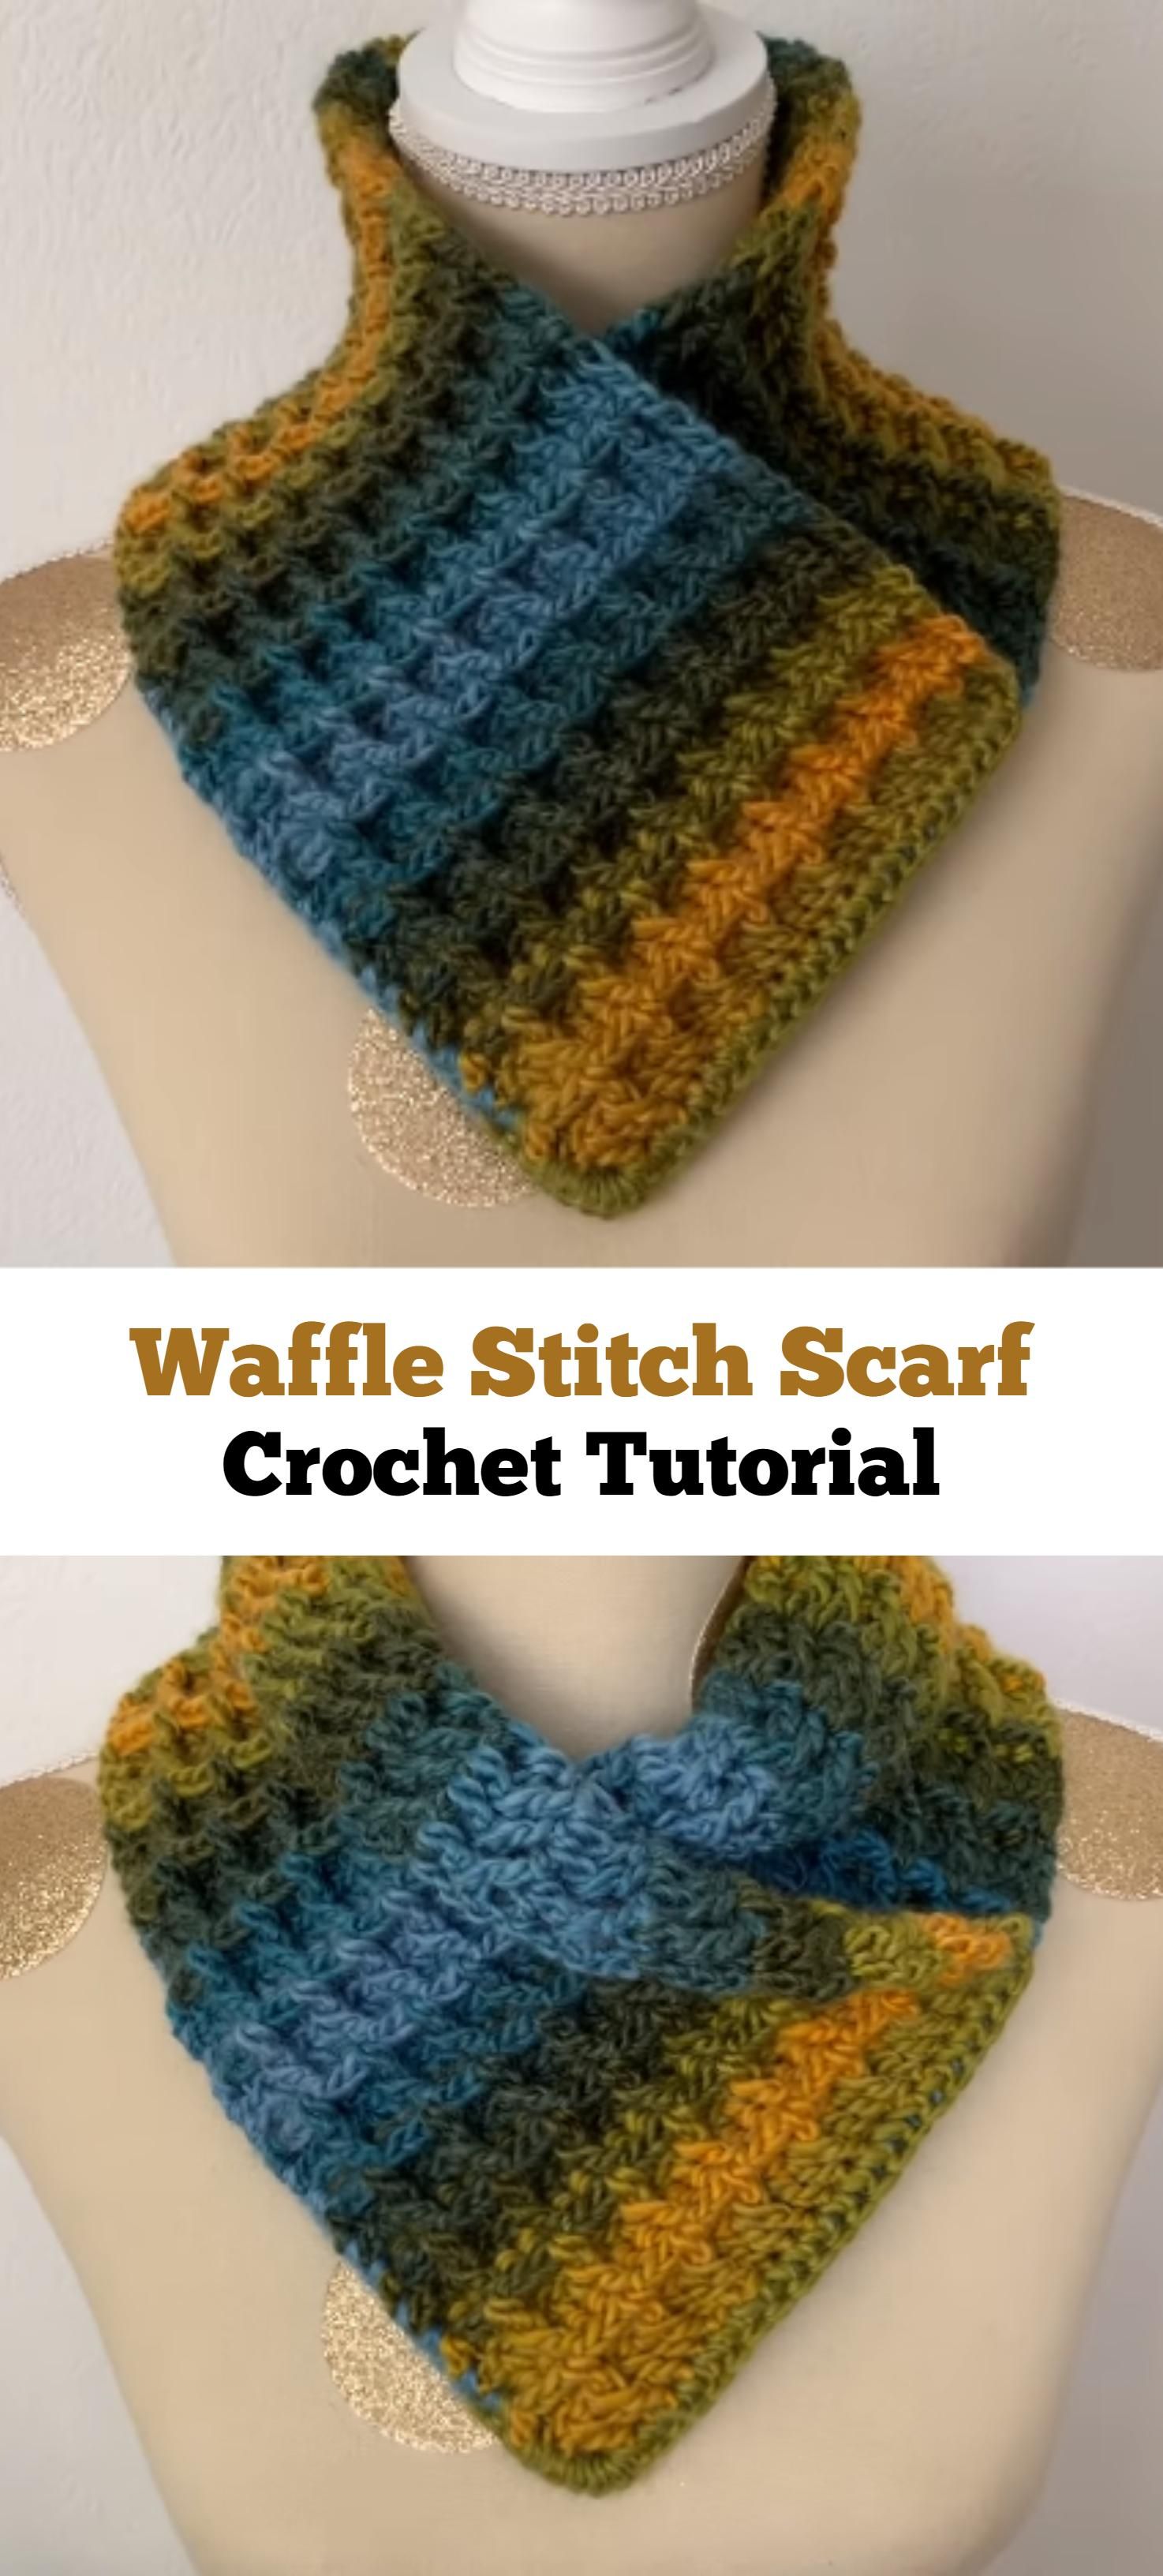 Crochet Waffle Stitch Cowl - Pretty Ideas Diy Häkeln, Stricken Und Häkeln,  Kleidung Häkeln